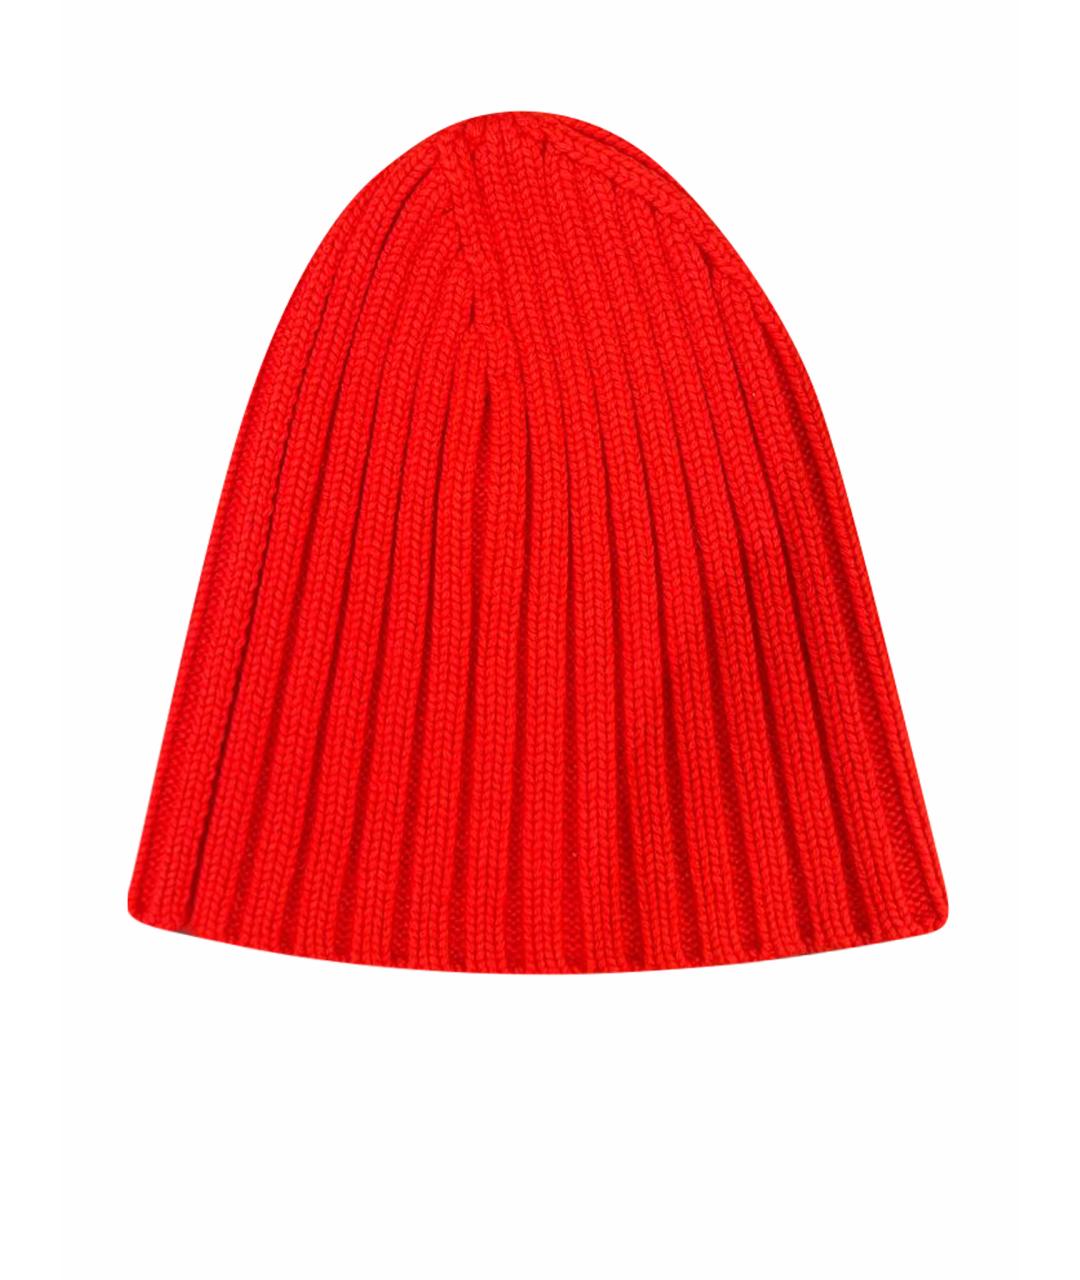 MICHAEL KORS Красная кашемировая шапка, фото 1